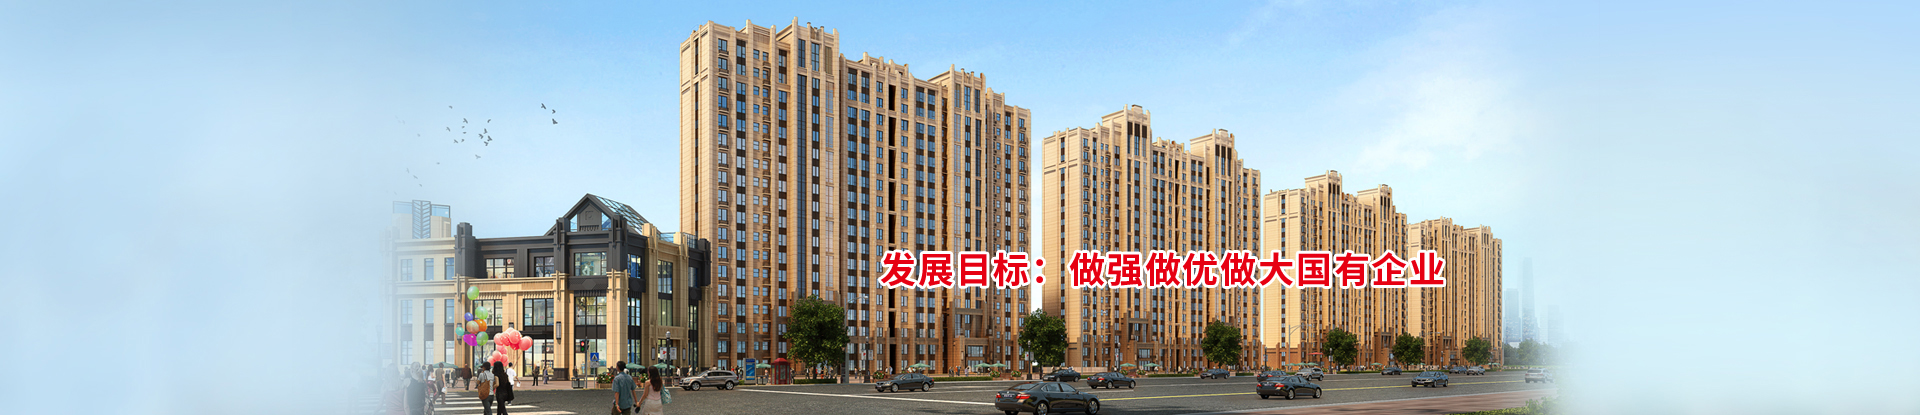 扬州市邗江城市建设发展有限公司